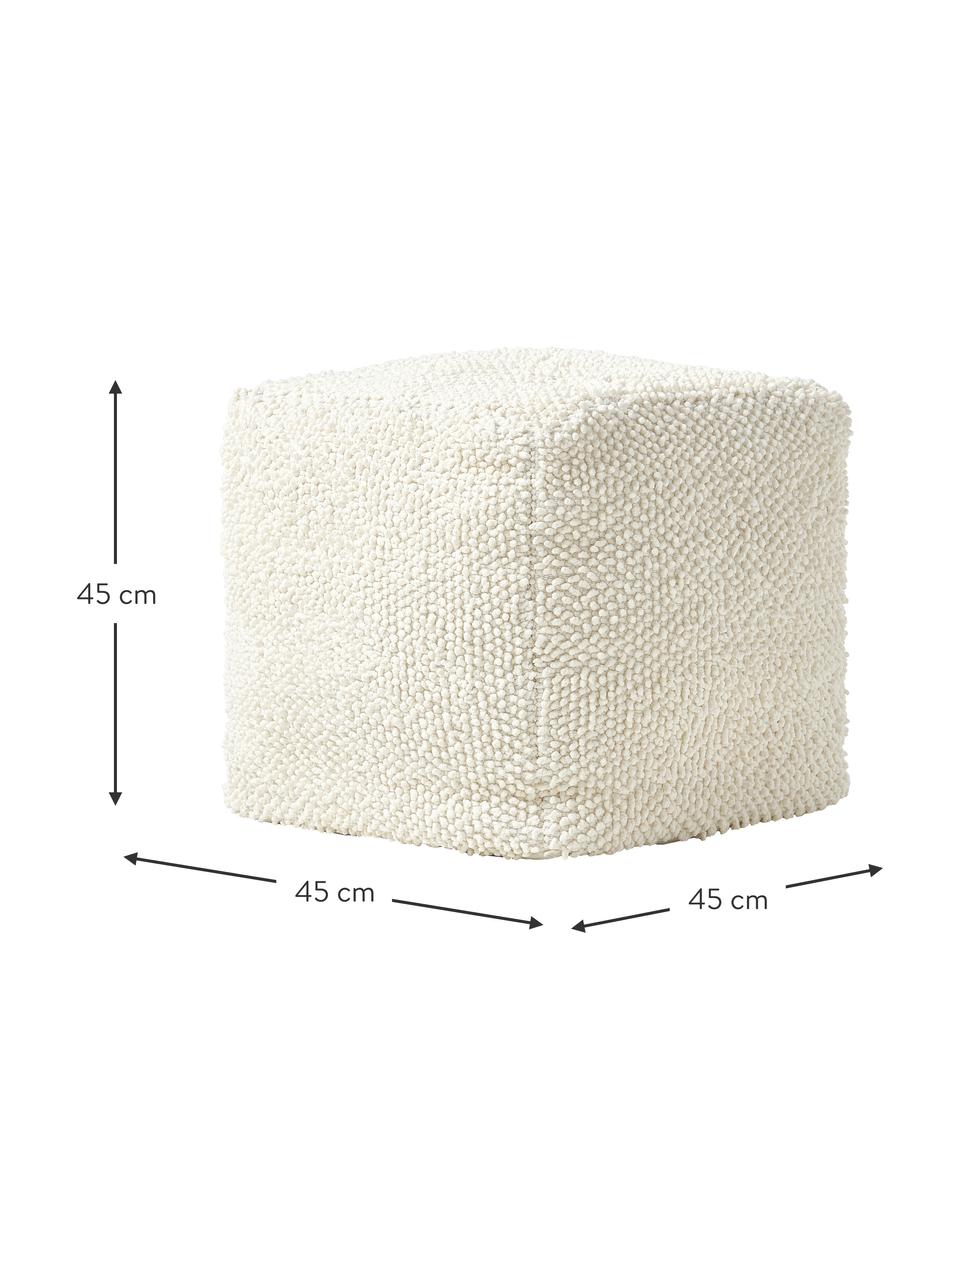 Pouf in cotone Indi, Rivestimento: 100% cotone, Bianco crema, Larg. 45 x Alt. 45 cm